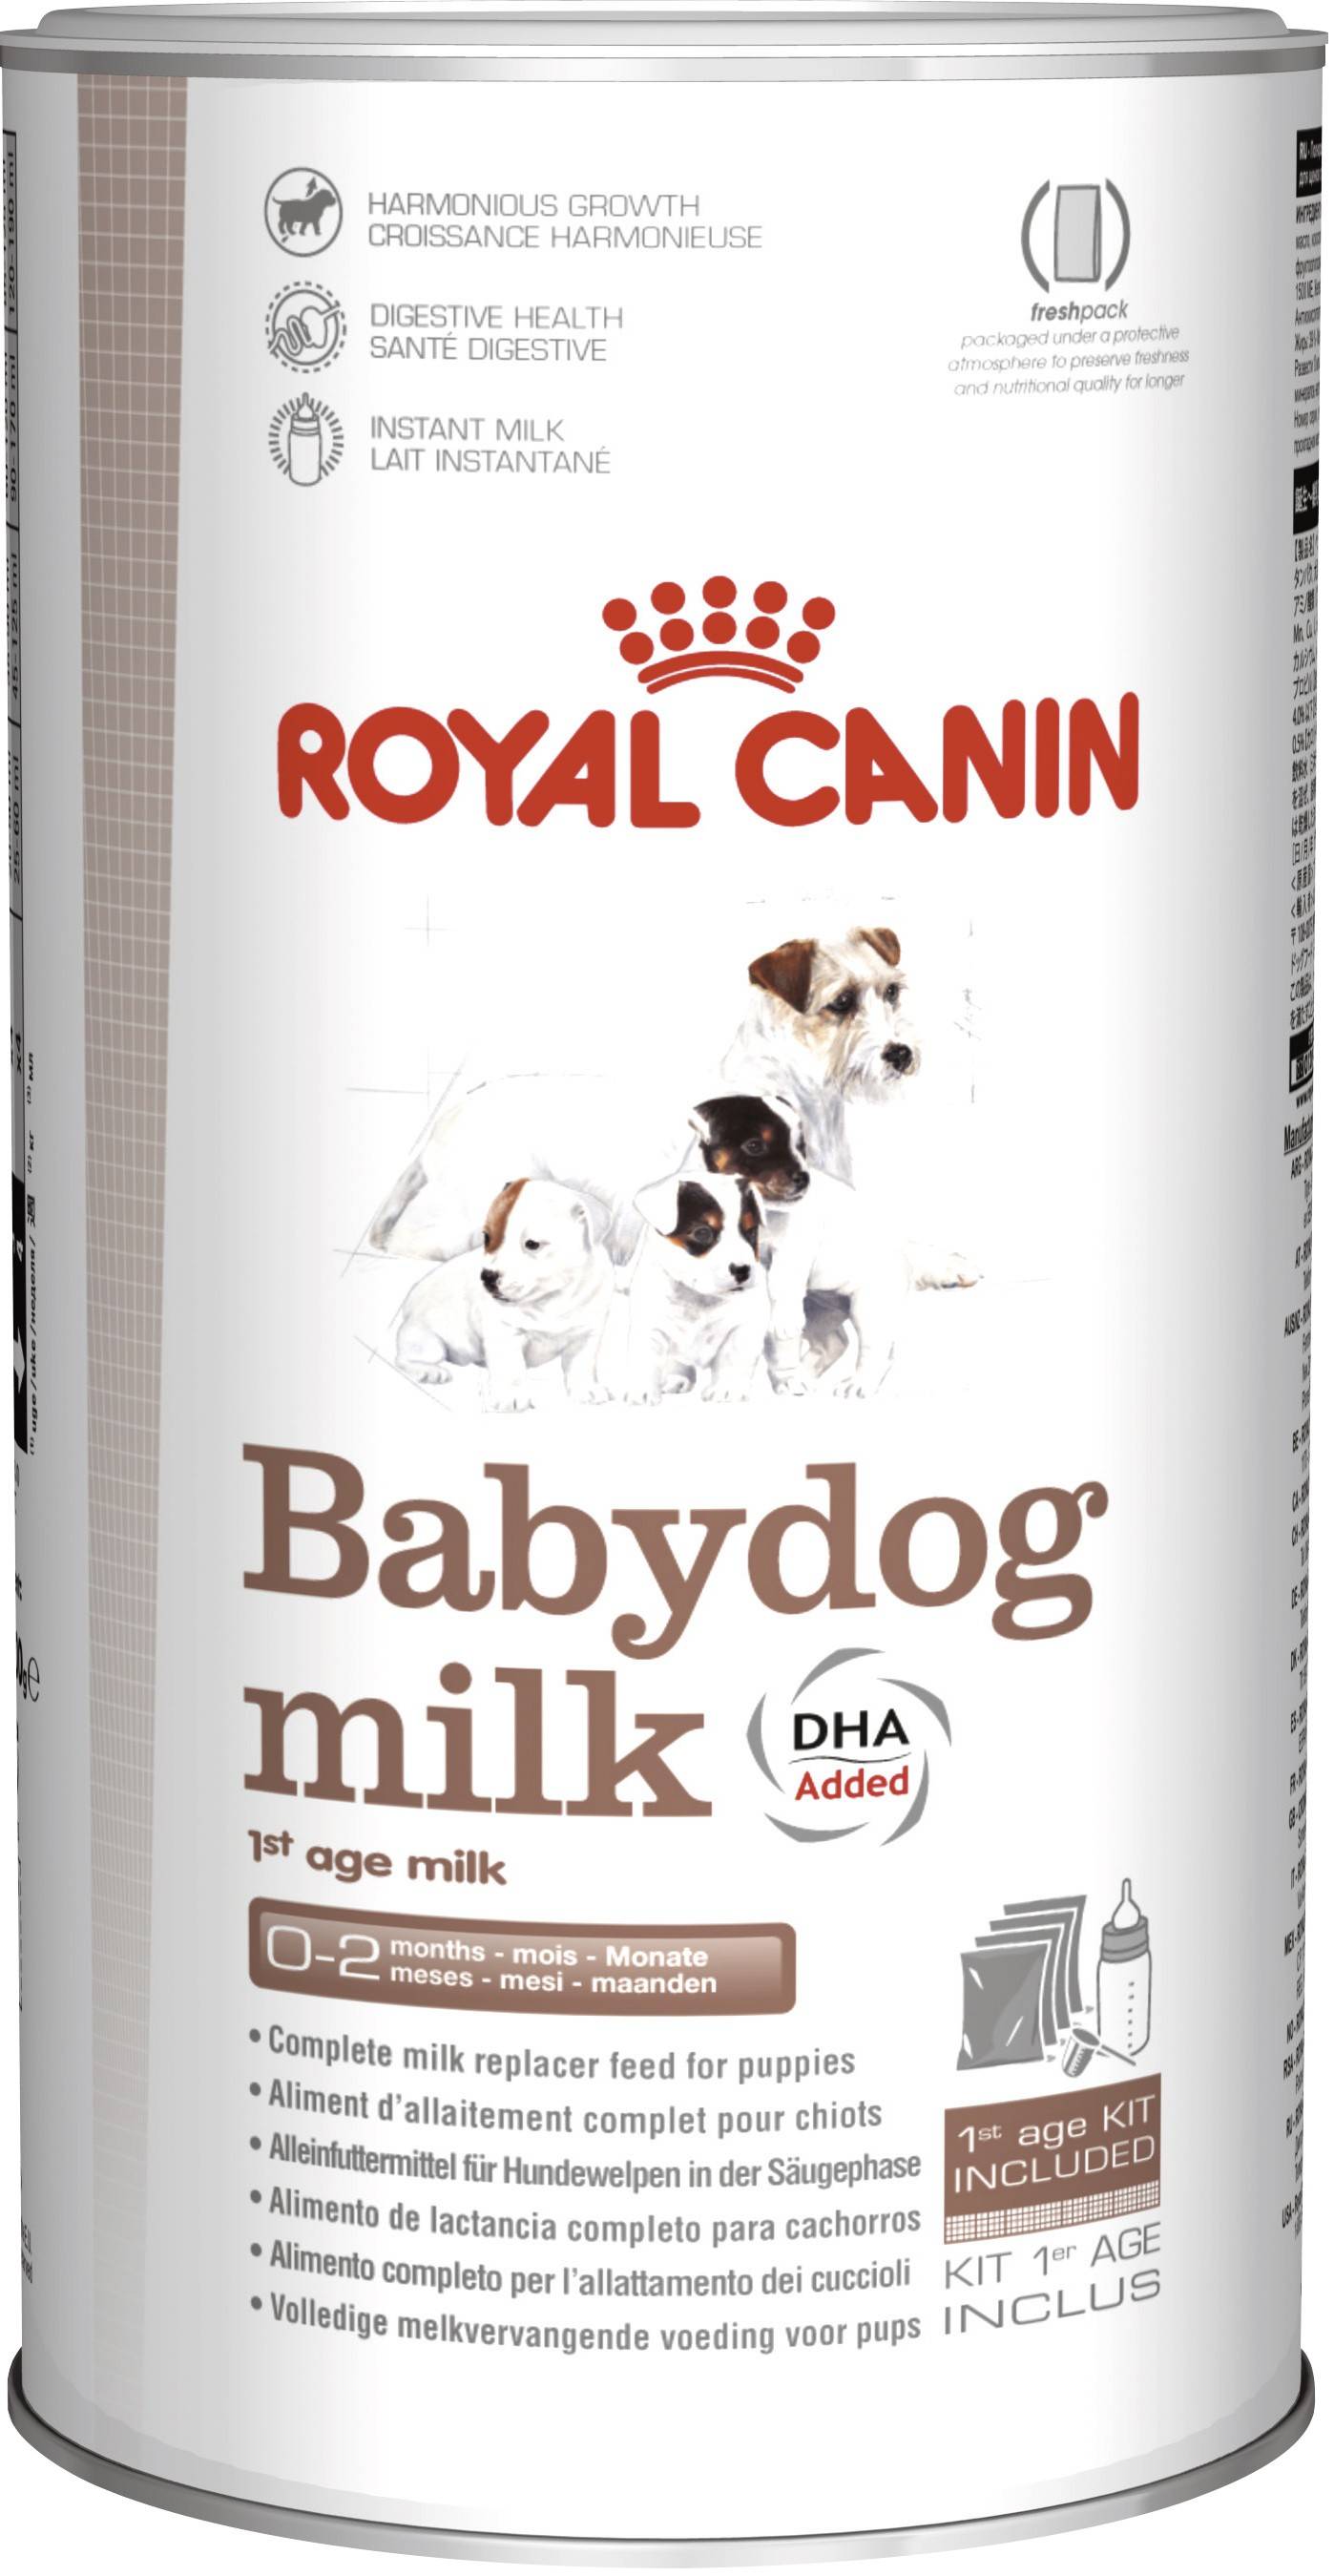 ROYAL CANIN BABYDOG MILK – заменитель молока для щенков